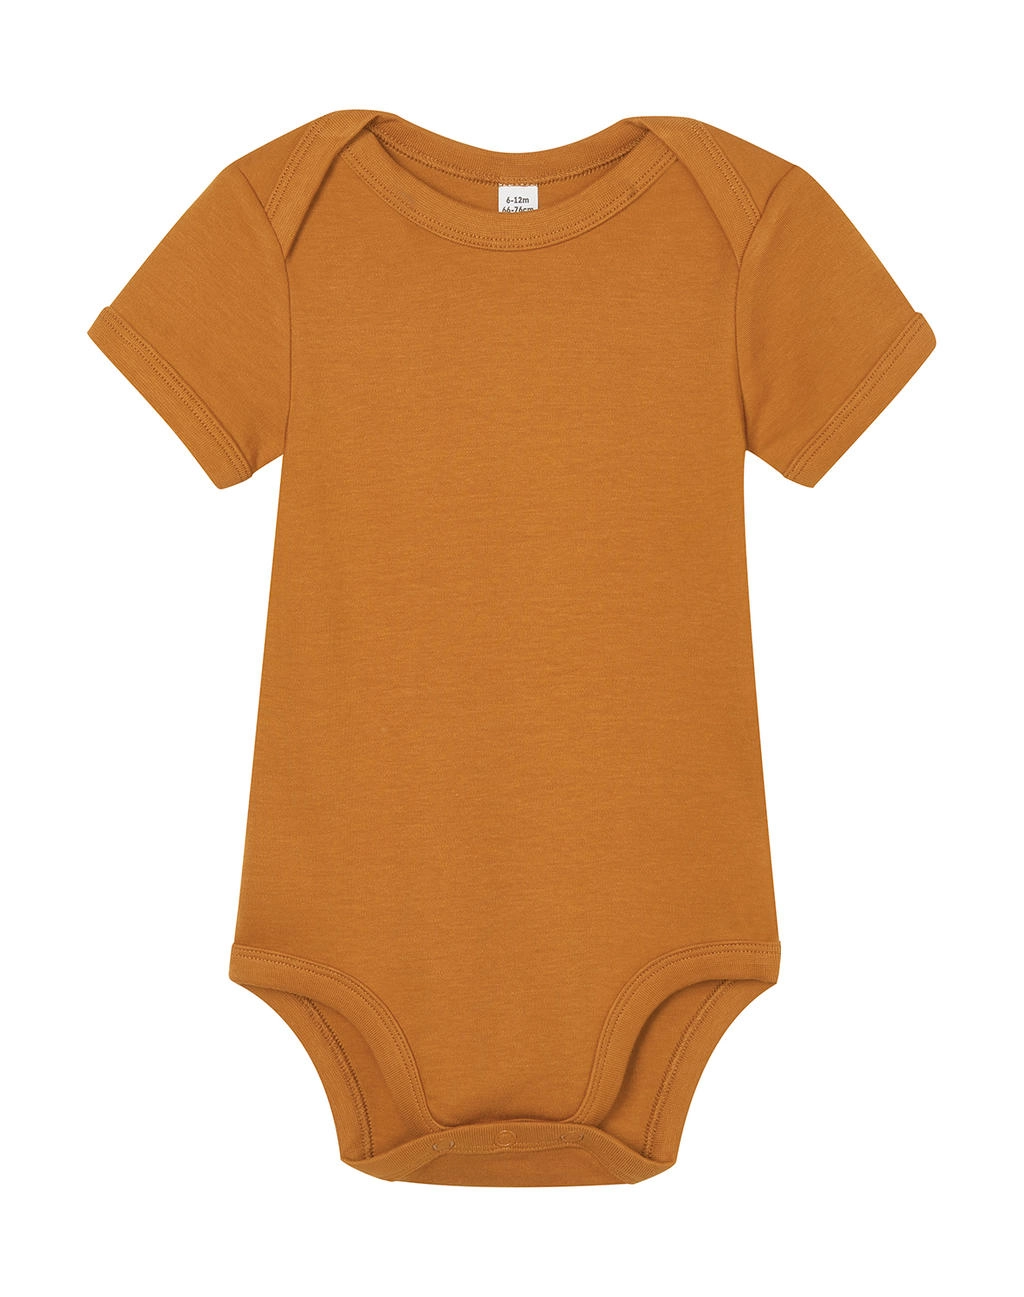 Baby Bodysuit zum Besticken und Bedrucken in der Farbe Toffee mit Ihren Logo, Schriftzug oder Motiv.